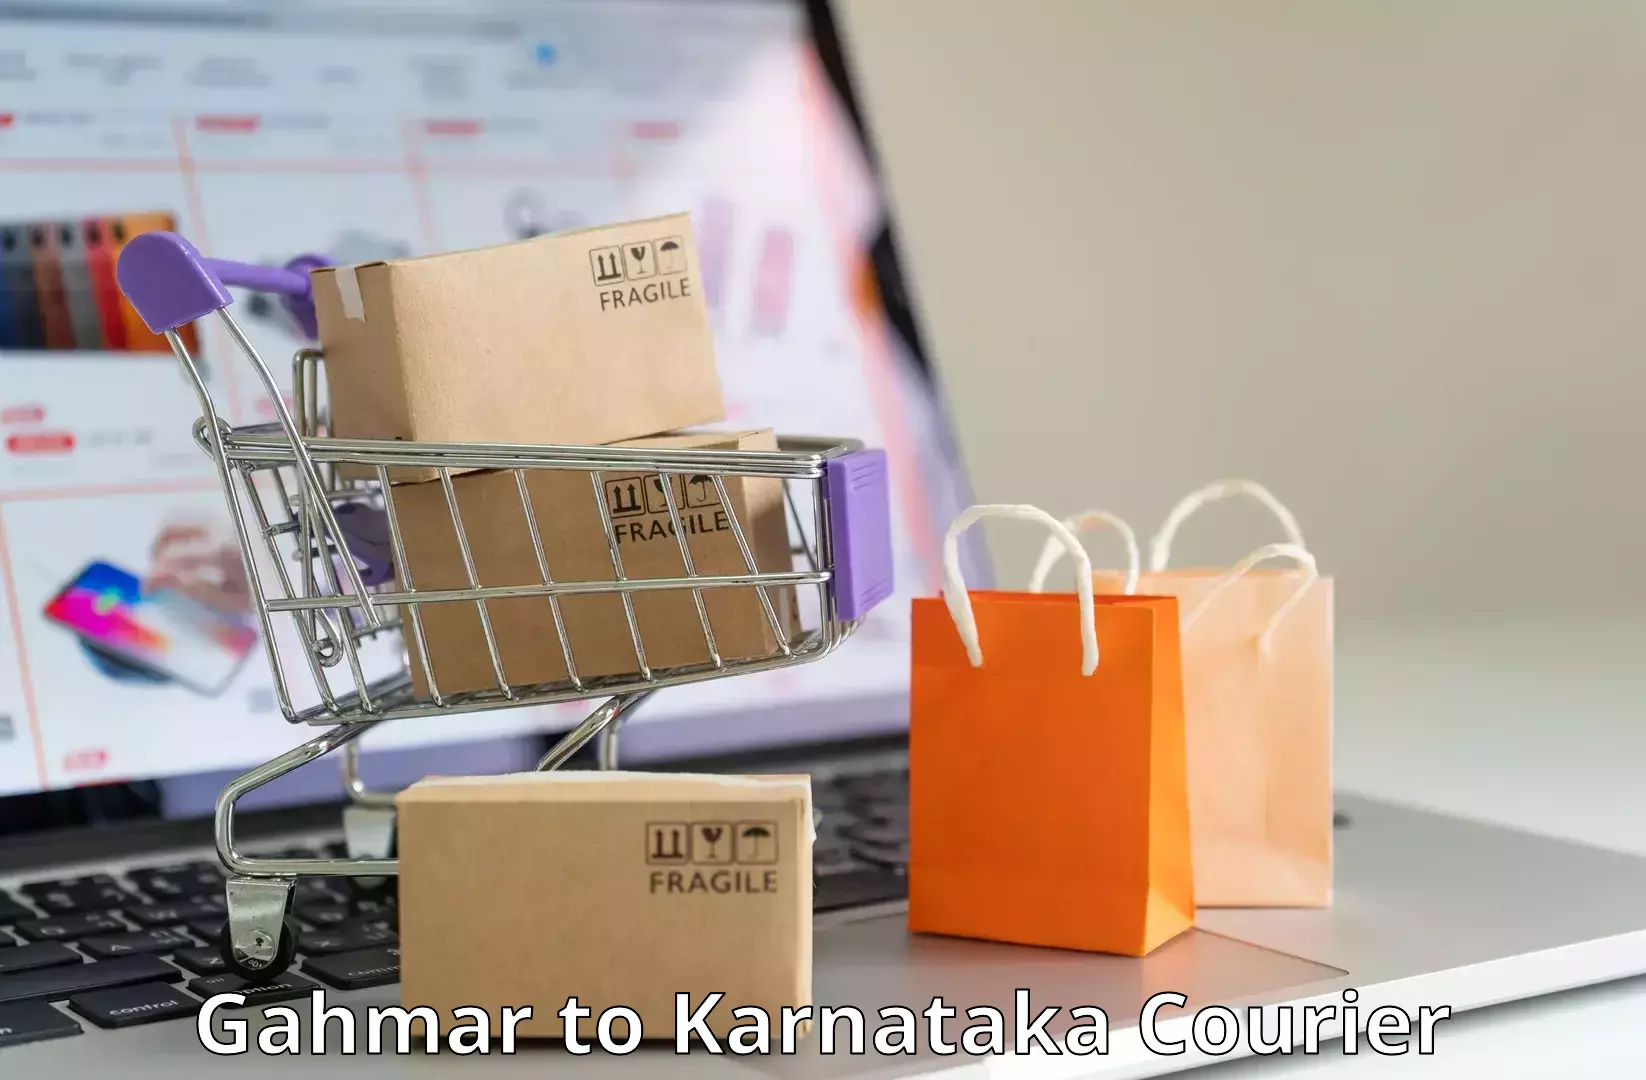 Package tracking Gahmar to Karnataka